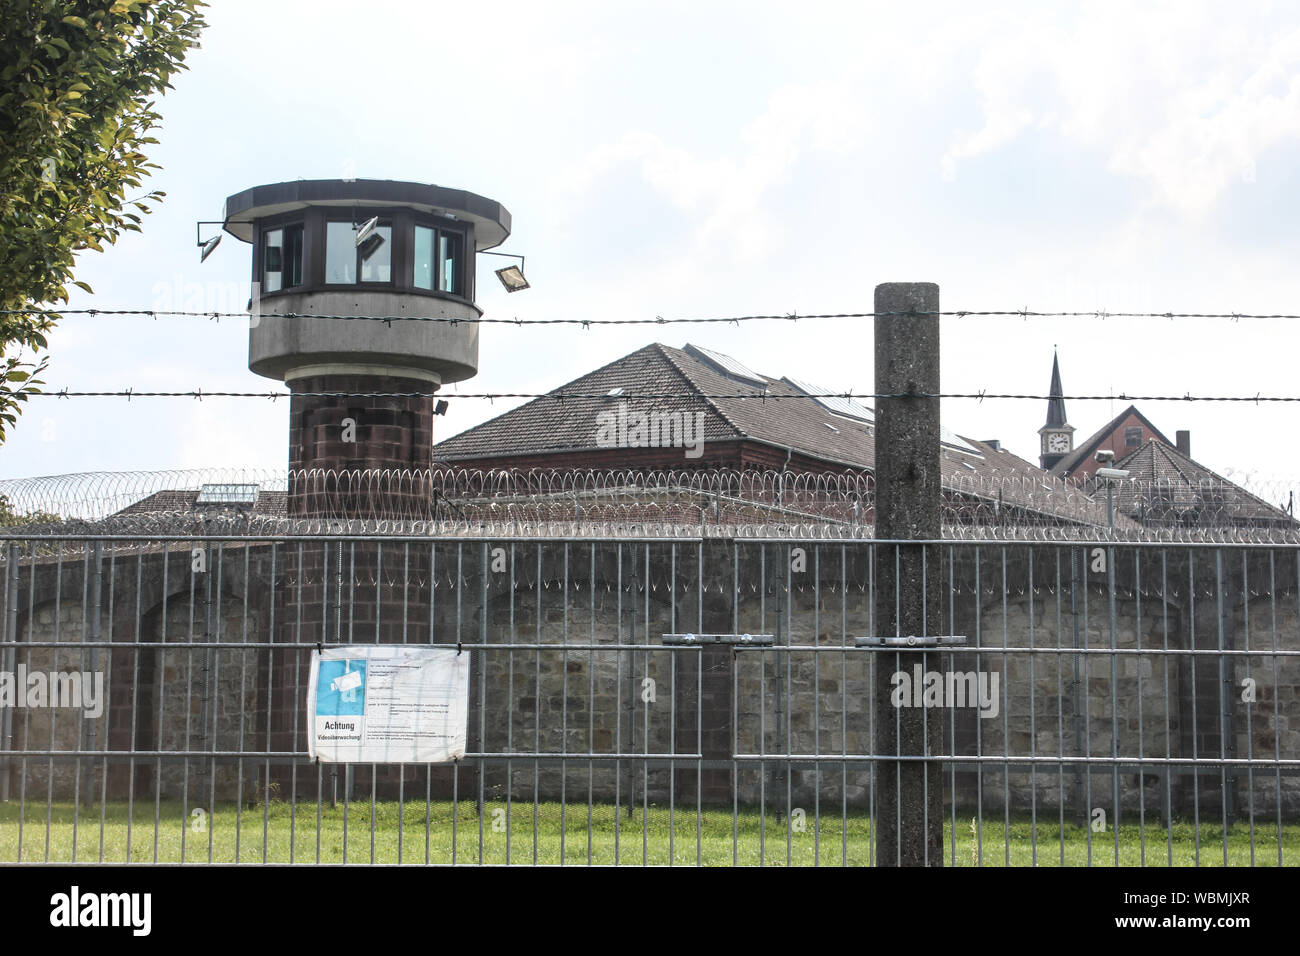 Muro de la prisión y torre de control desde el exterior, Alemania, JVA Kassel. Símbolo de la institución penal. Foto de stock